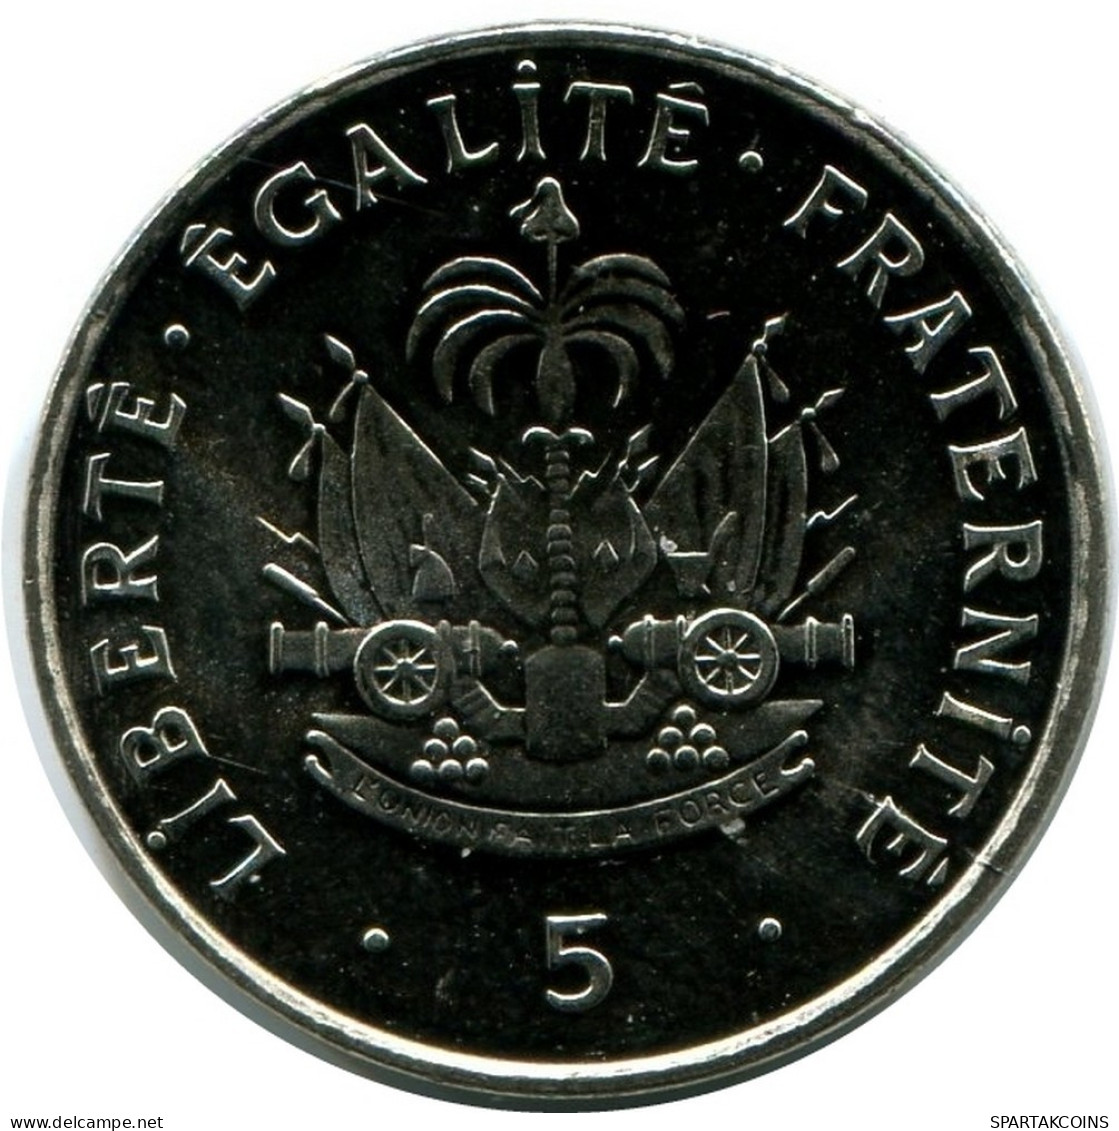 5 CENTIMES 1997 HAITI UNC Coin #M10396.U.A - Haïti